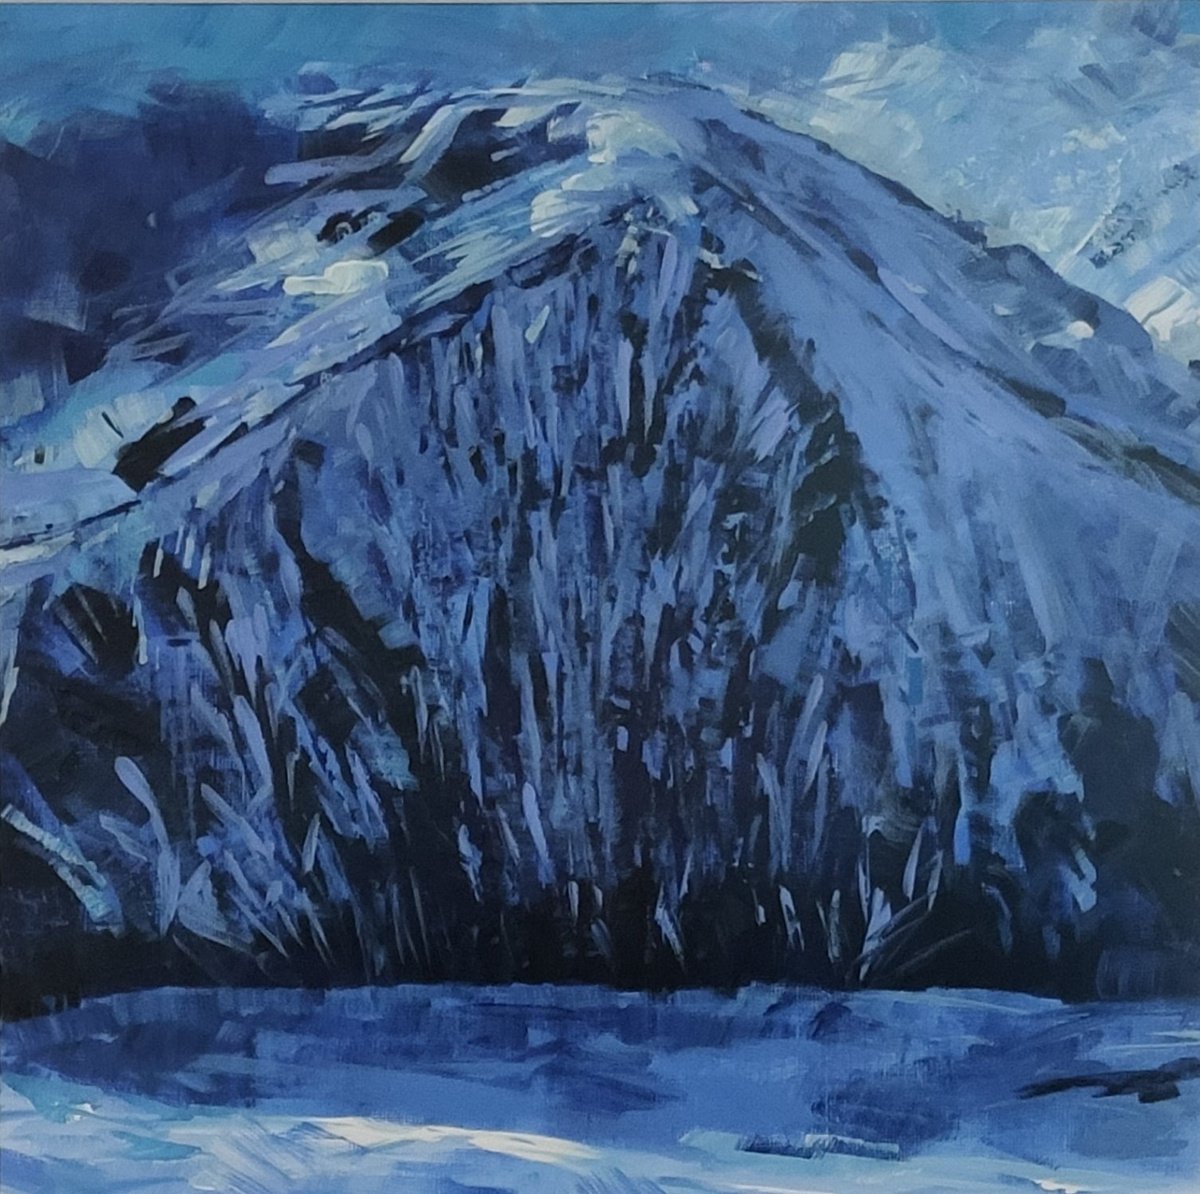 Gora (The Mountain) by Julia Preston